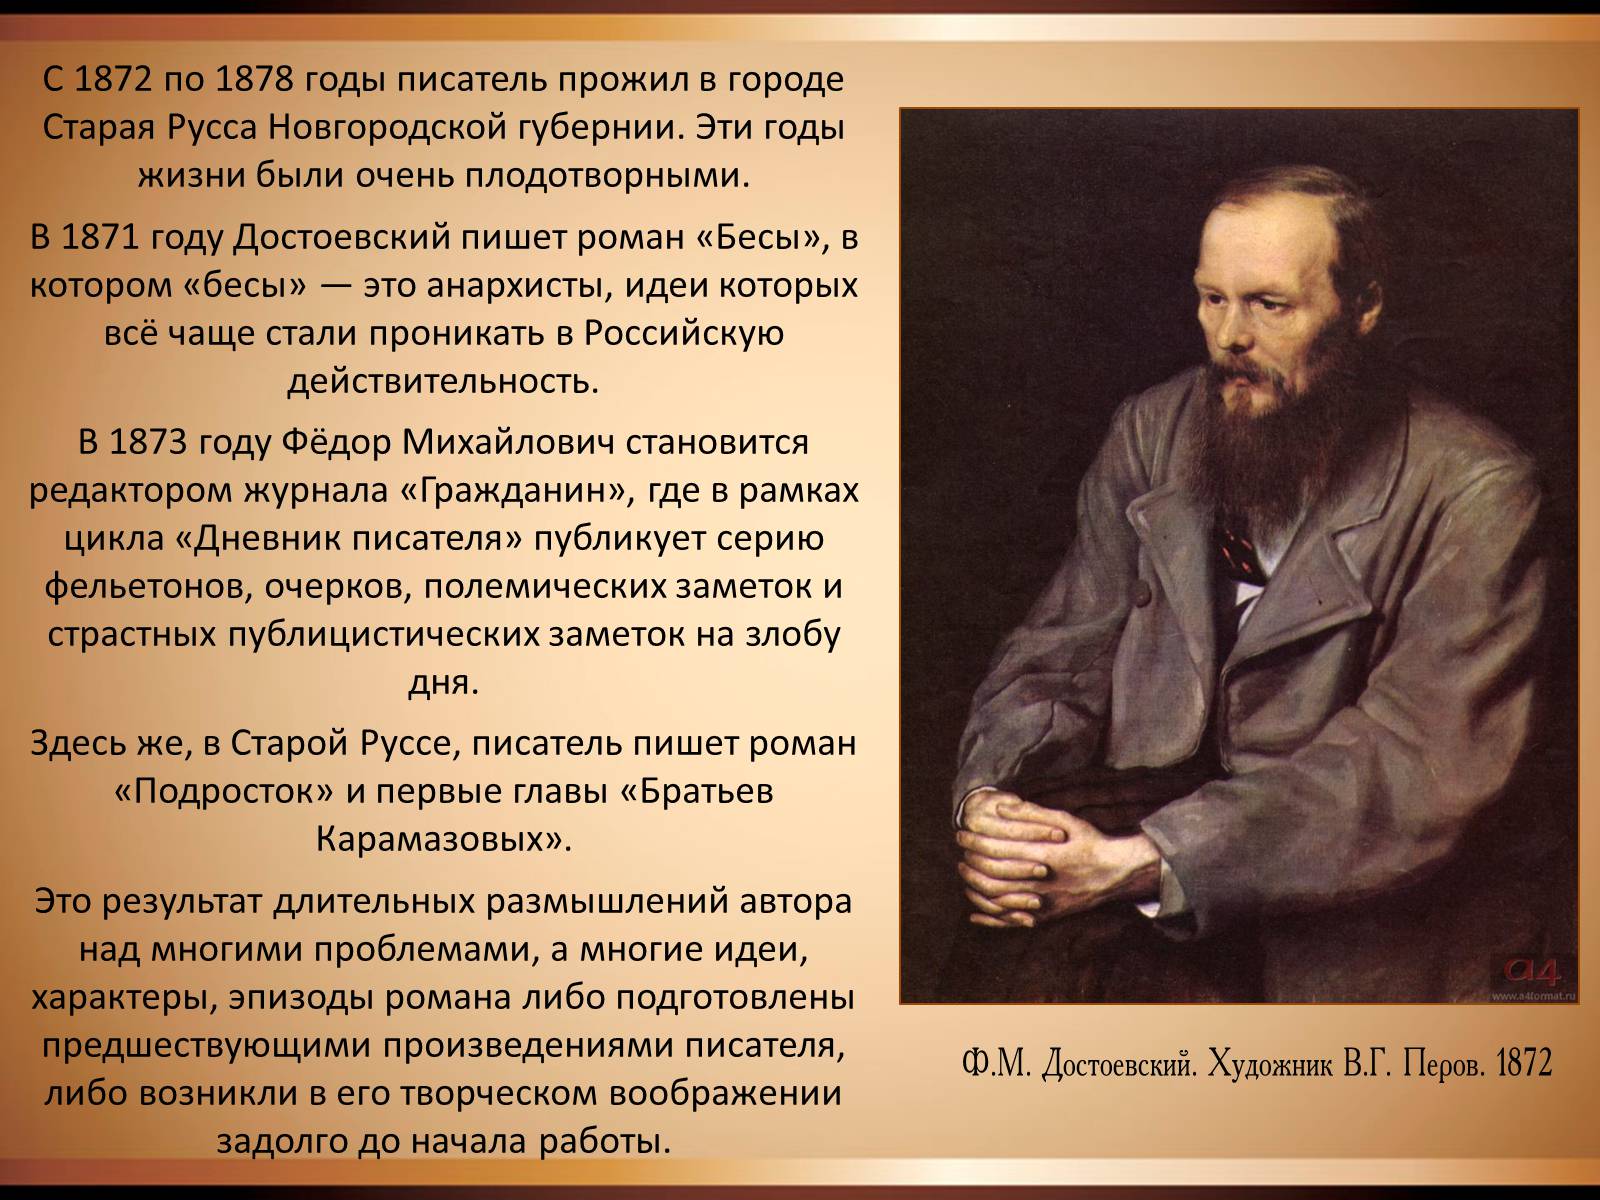 Кому пишет писатель. Ф.М. Достоевский русский писатель (1821—1881). Фёдор Достоевский 1821-1881. Достоевский годы жизни.